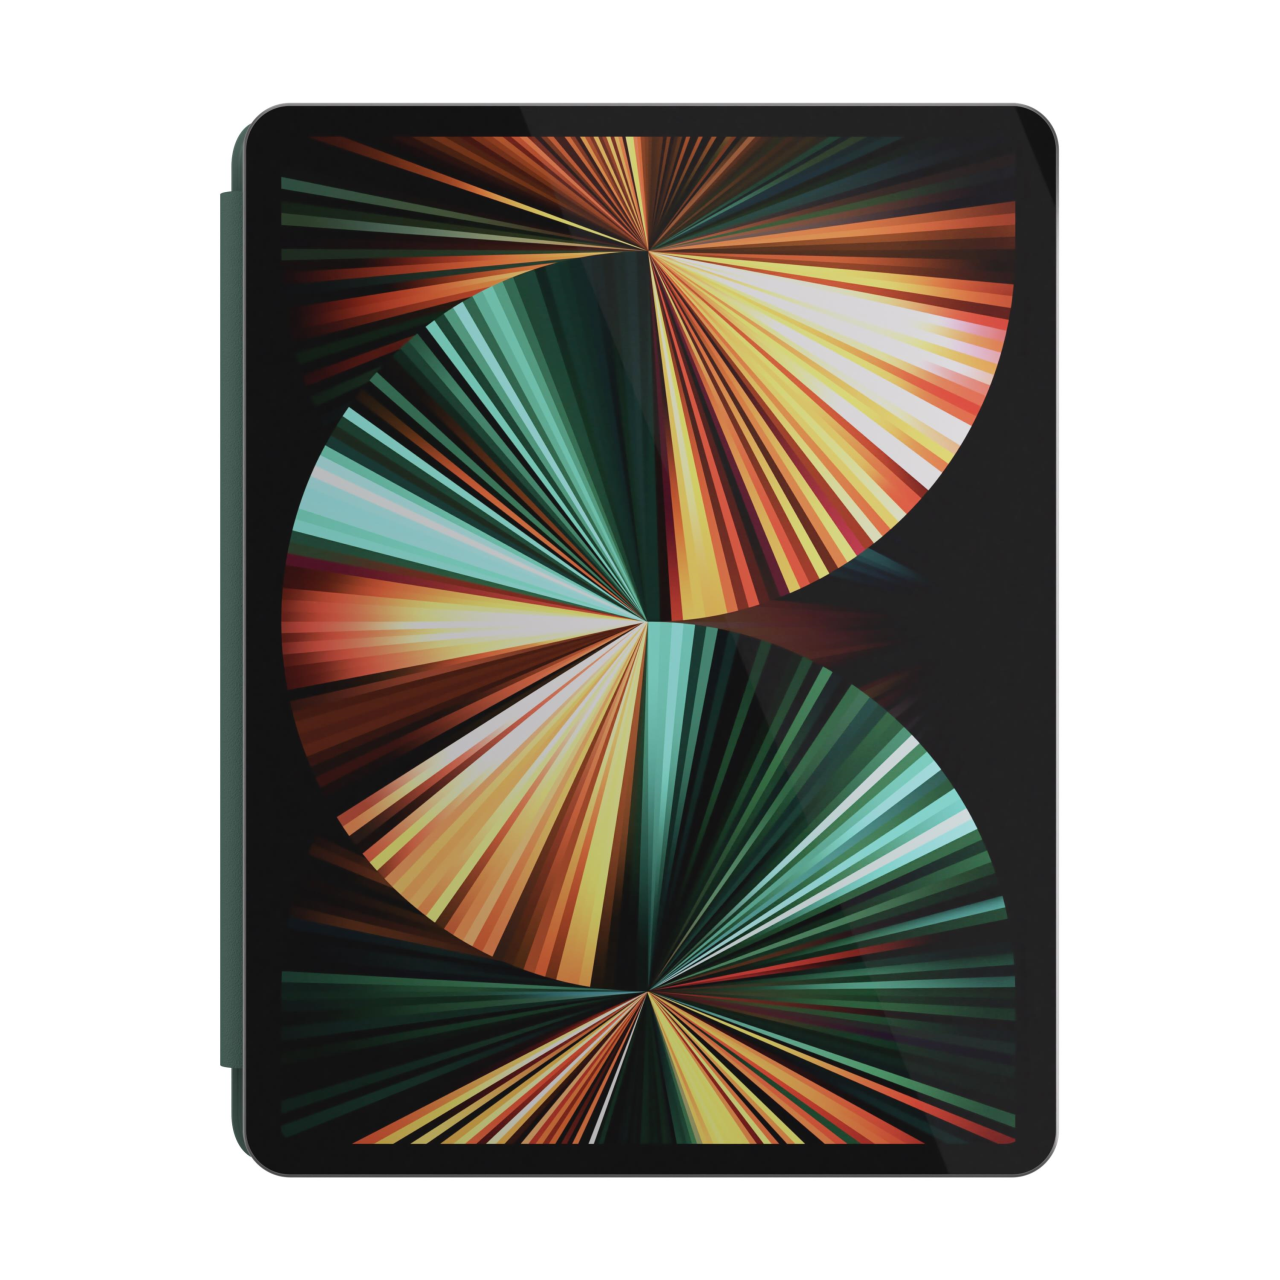 NEXT.ONE Magnetisches Smart Case für iPad Pro 12,9" 2. Generation und neuer - Grün